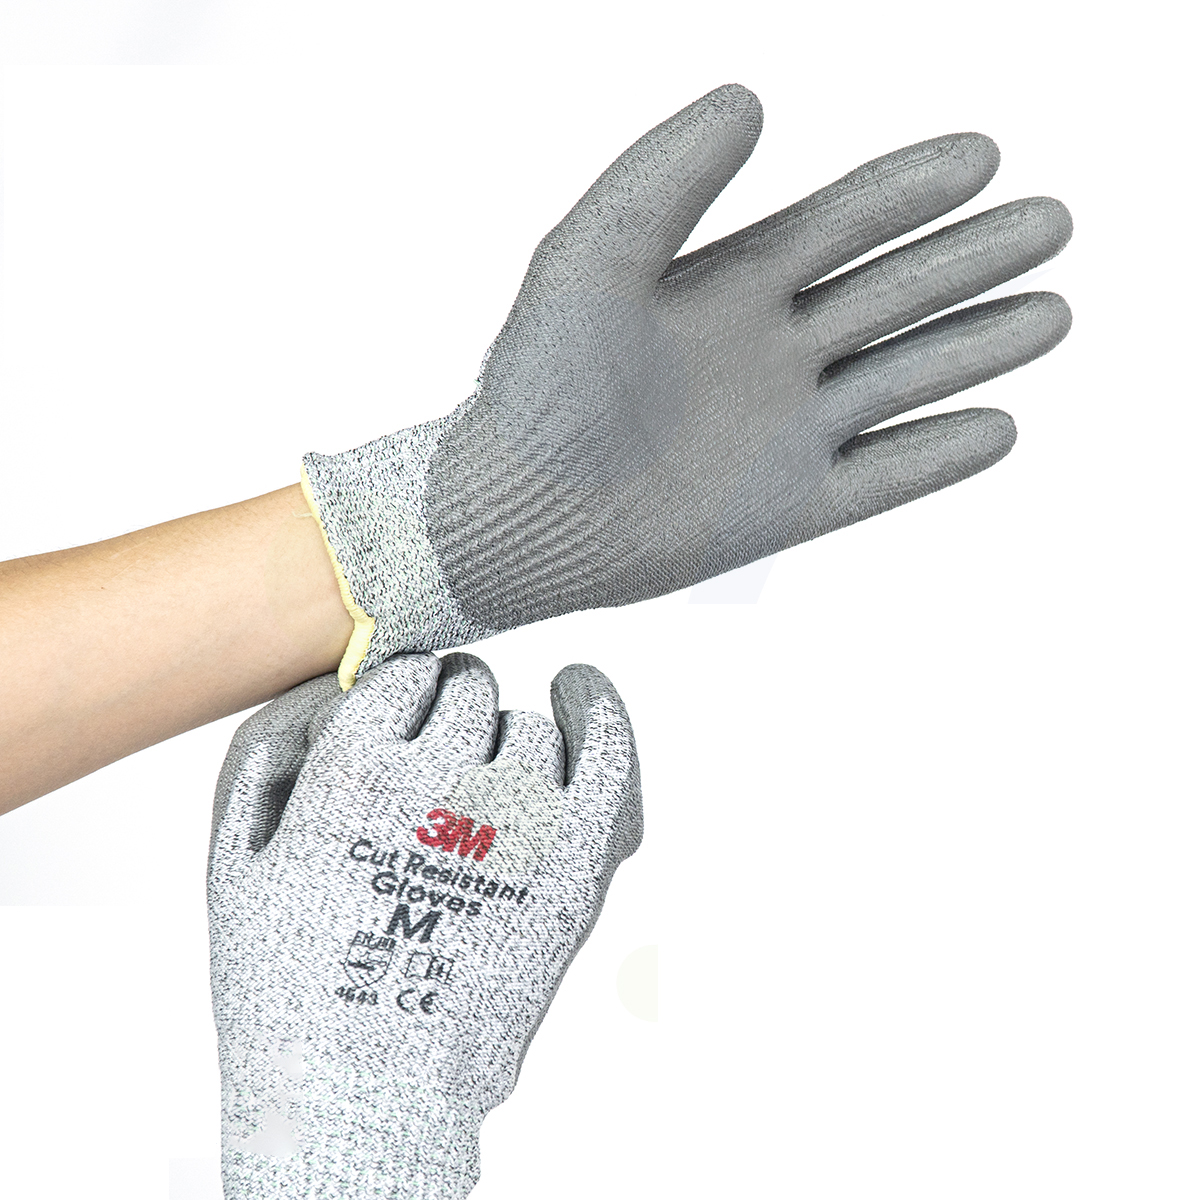 Găng tay chống cắt cấp độ 5 - LV5